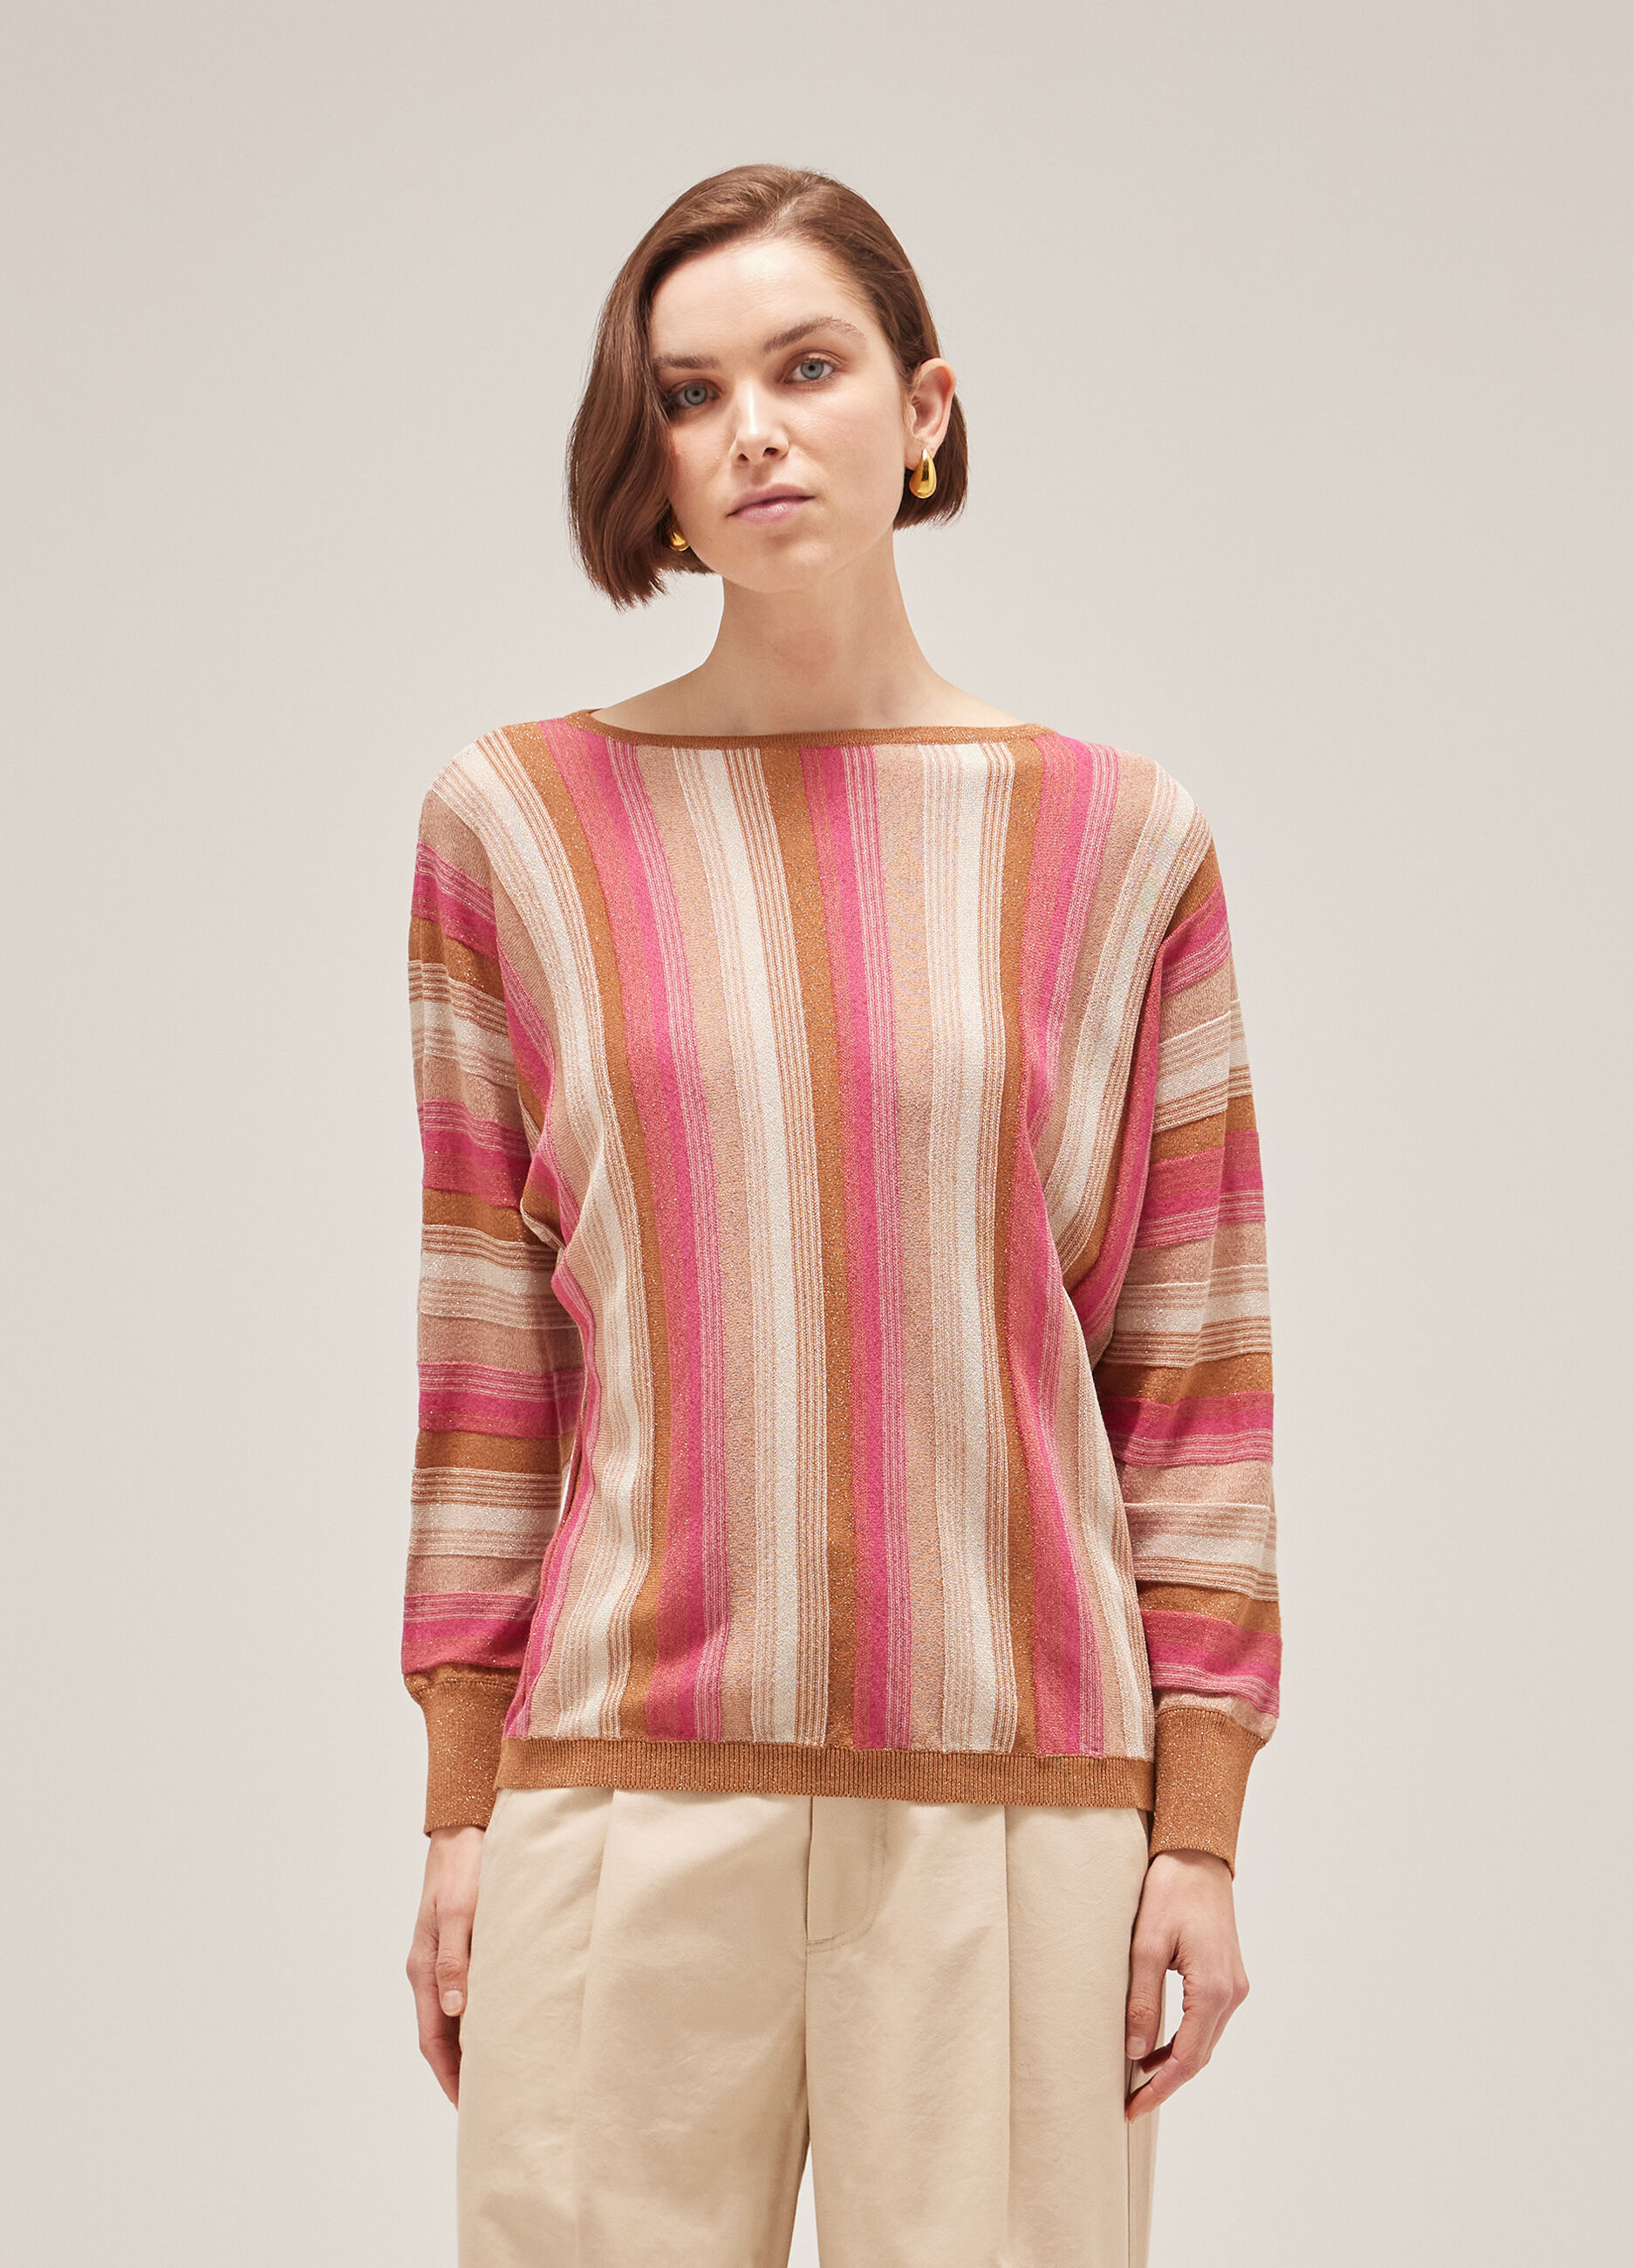 Maglione tricot a righe_1